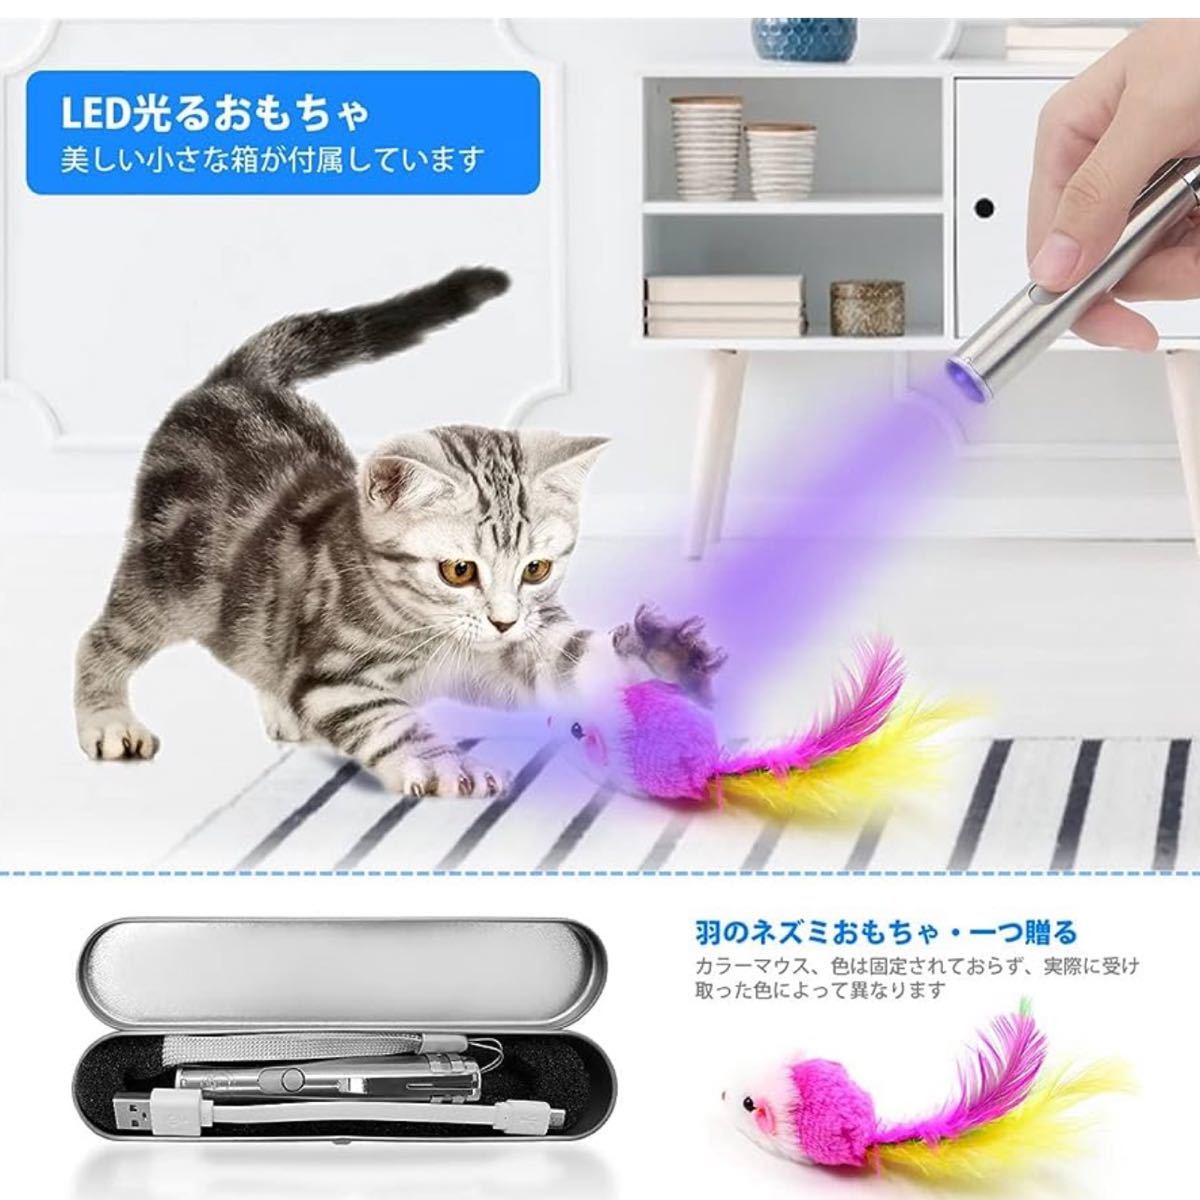  кошка для игрушка ... кошка мышь 1 шт есть 3in1 многофункциональный LED.....- луч кошка для светится игрушка usb зарядка кабель есть 